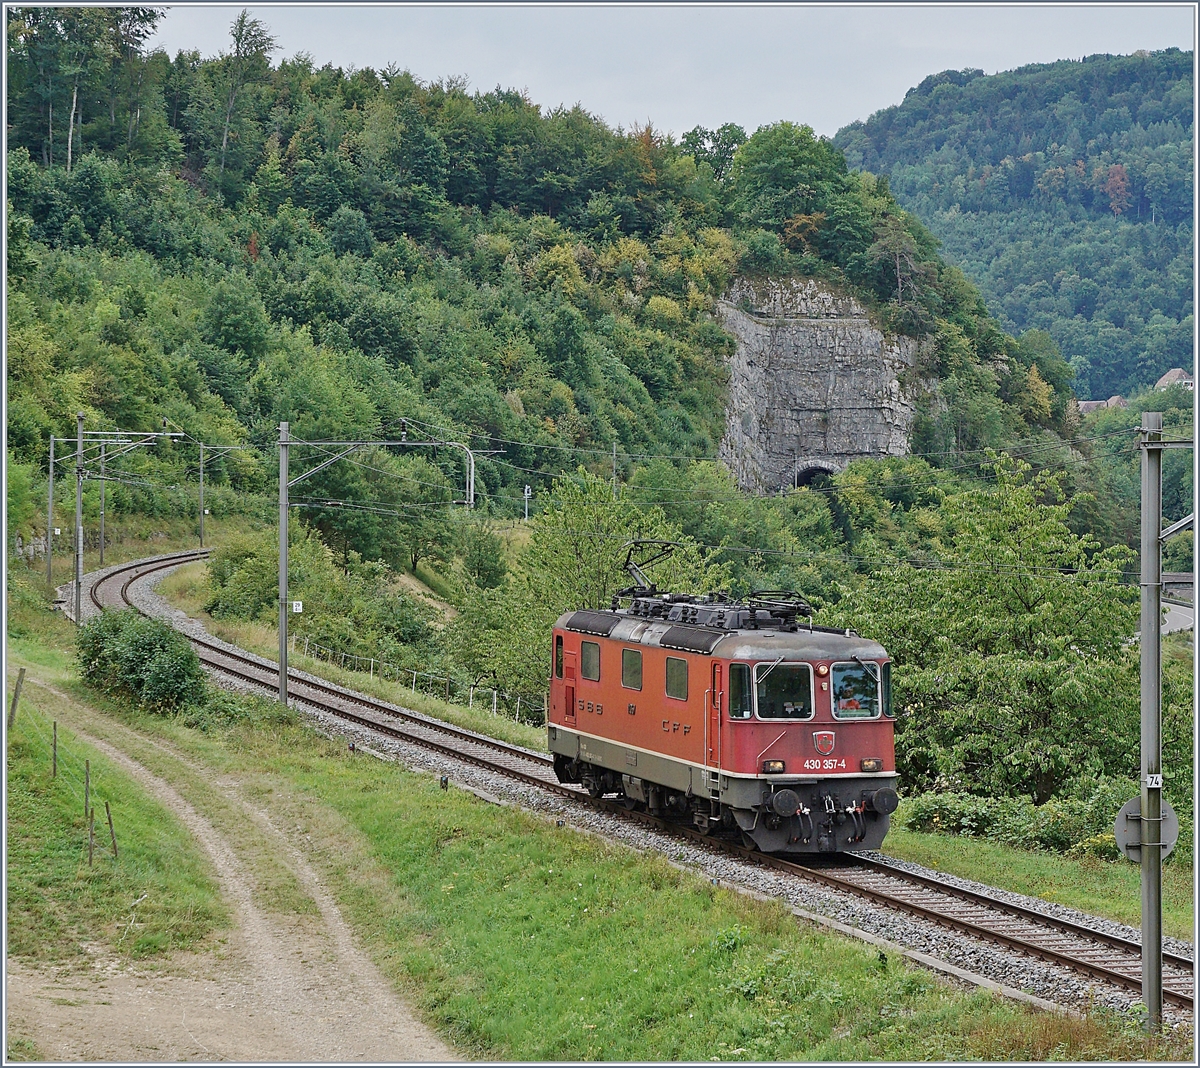 Die SBB Re 430 357-4 zwischen Läufelfingen und Sissach.

7. August 2018